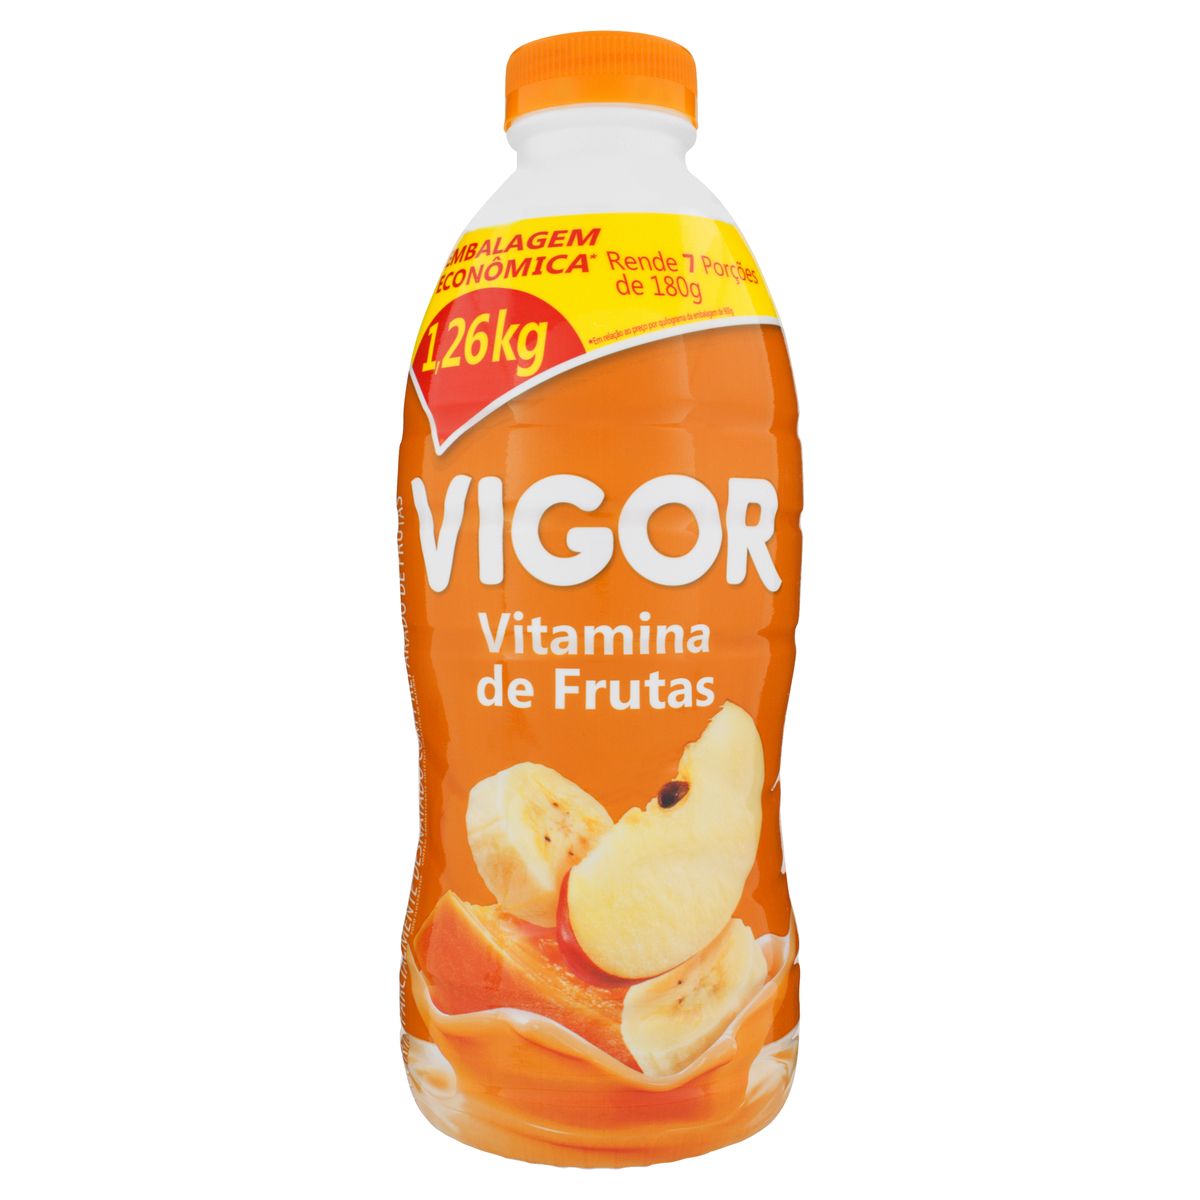 Iogurte Parcialmente Desnatado Vitamina de Frutas Vigor 1,26kg